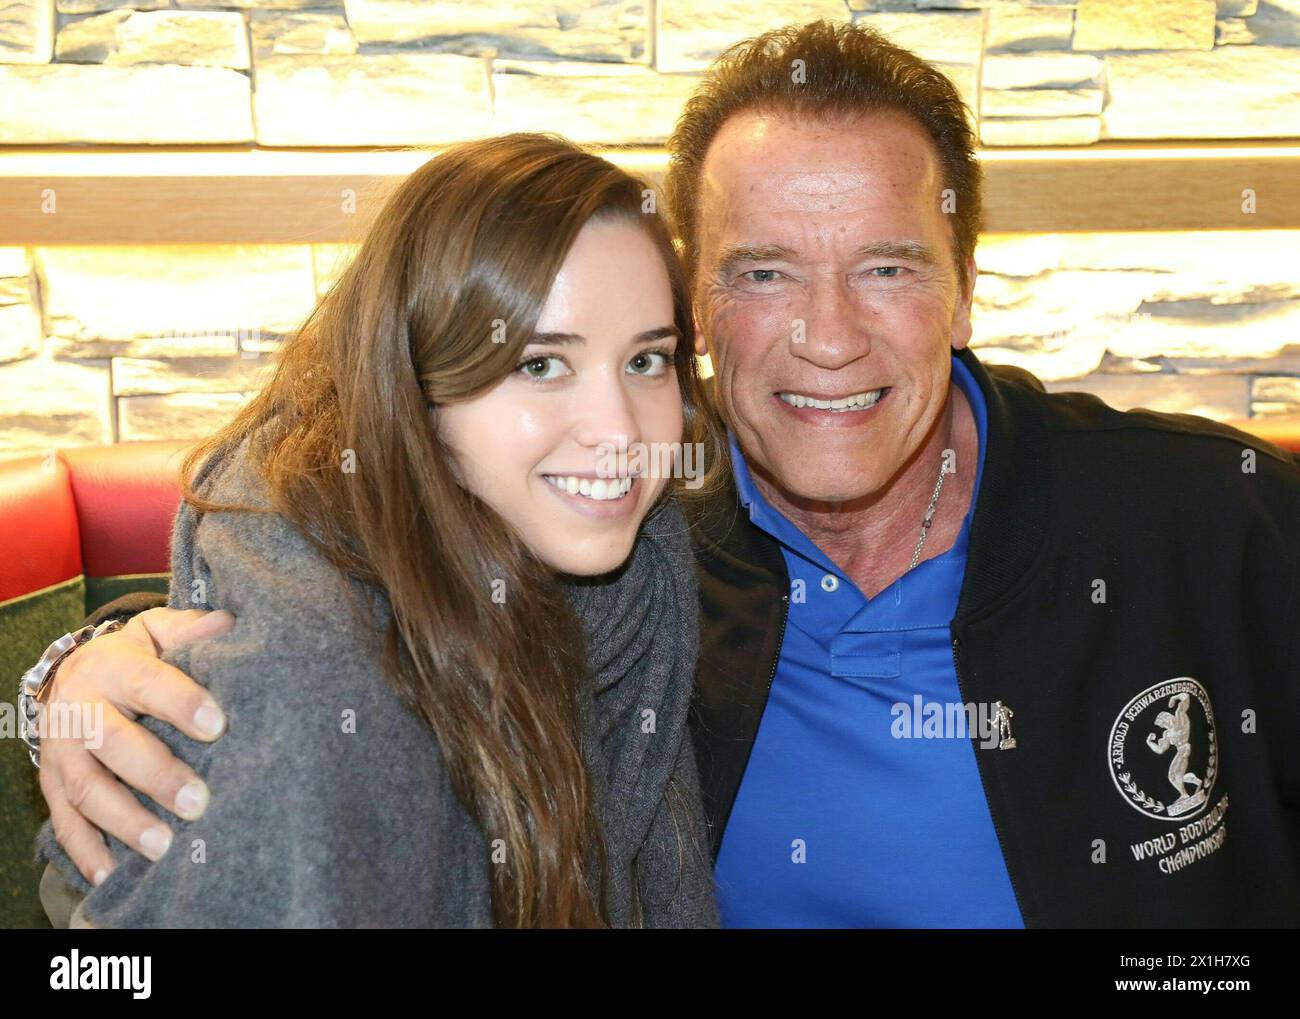 Arnold Schwarzenegger während der Olympischen Sonderweltwinterspiele Österreich 2017 in Schladming, Österreich, am 23.03.2017. BILD: Arnold Schwarzenegger und seine Tochter Christina - 20170323 PD6696 - Rechteinfo: Rights Managed (RM) Stockfoto